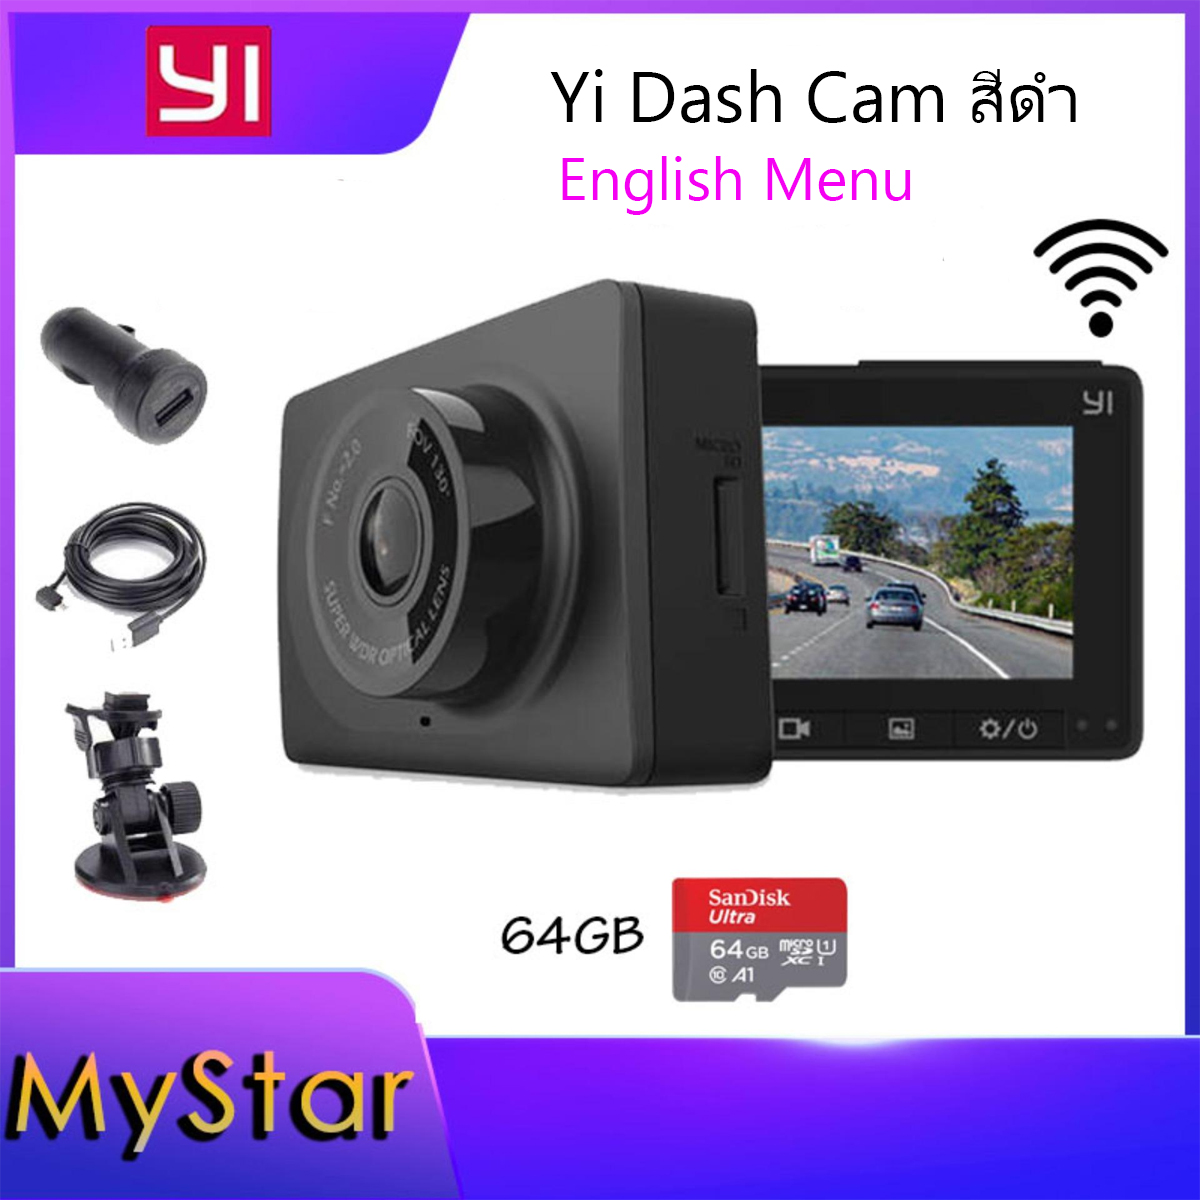 กล้องติดรถยนต์ Xiaomi Yi Car Dash Cam Camera Action cam (เมนูภาษาอังกฤษ) English Menu Full HD 1080p car WIFI DVR F 2.0 มุมมอง 130 + Micro SD 64 GB